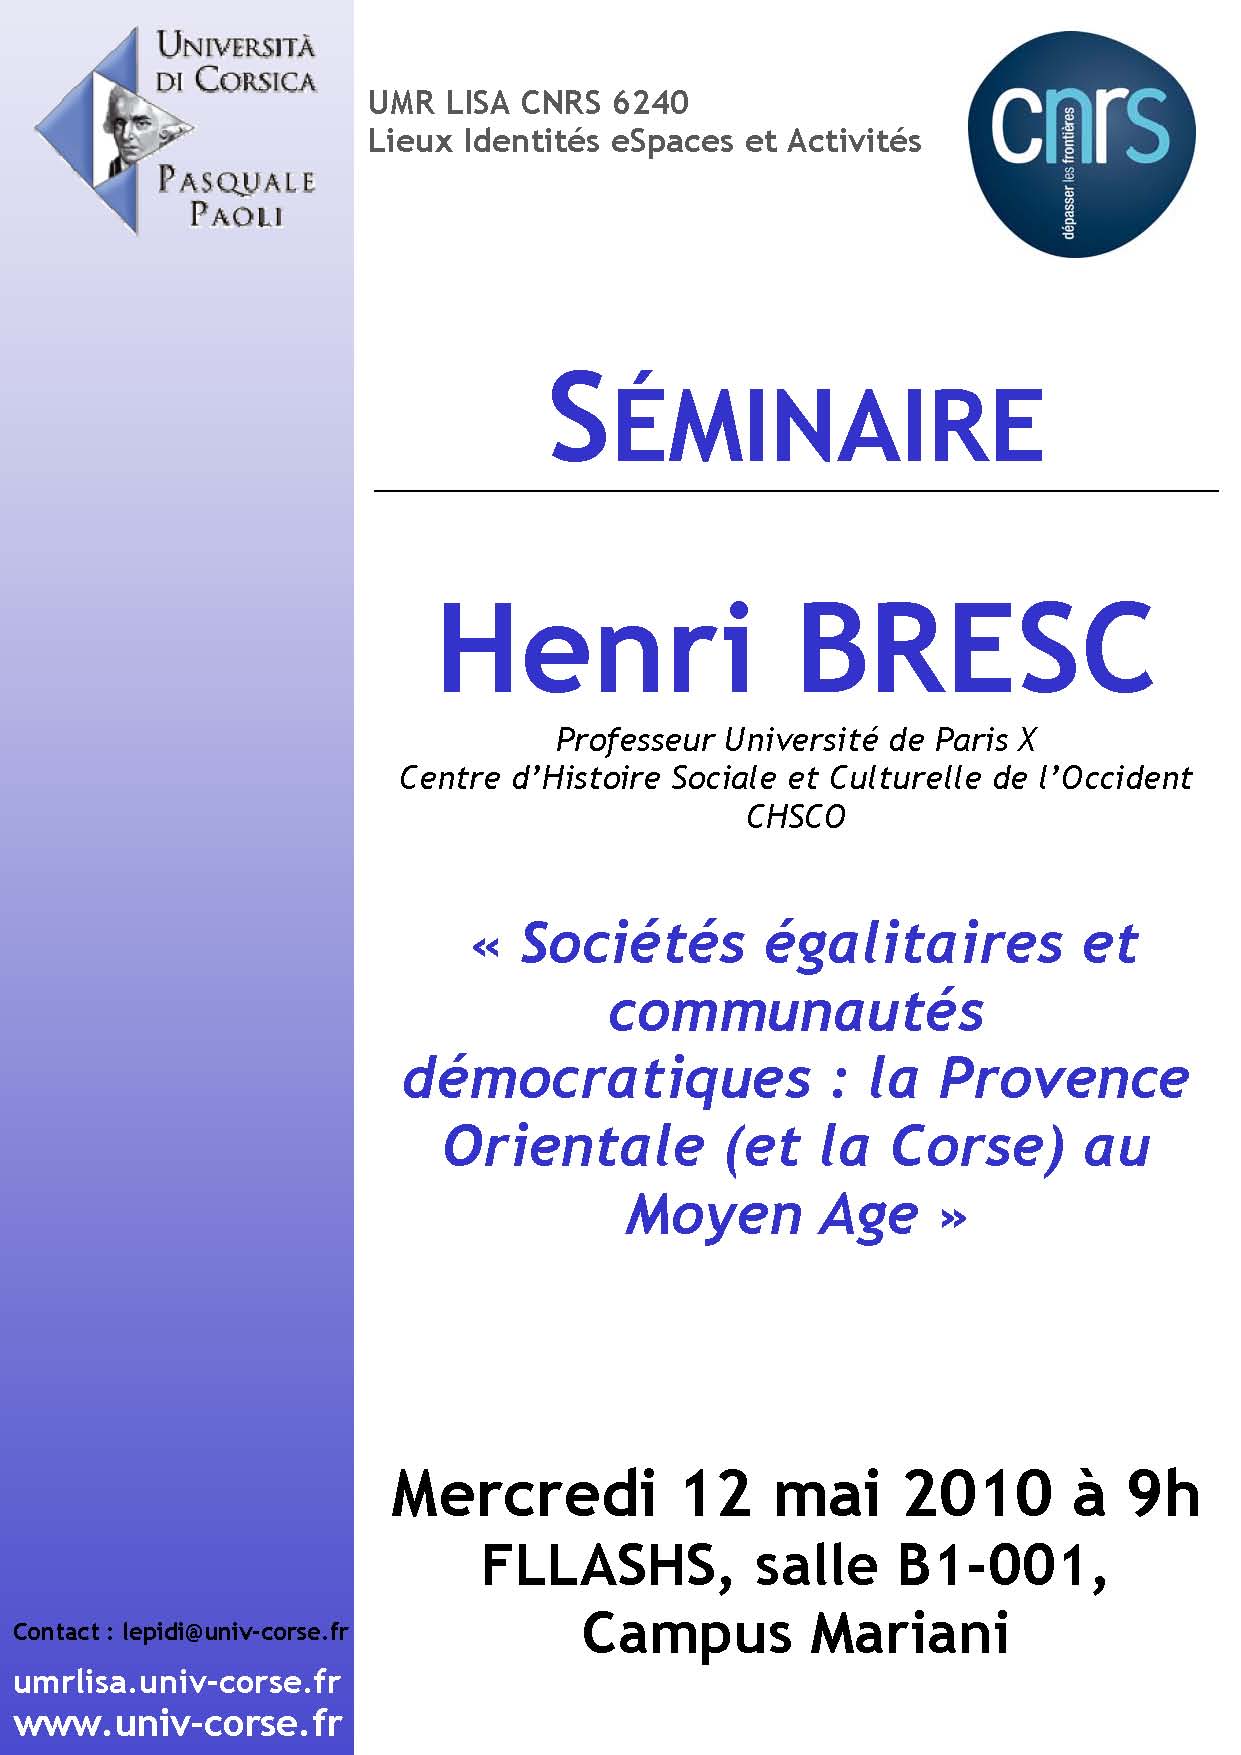 >Séminaire Henri Bresc - Sociétés égalitaires et communautés démocratiques, la Provence orientale (et la Corse) au Moyen Age